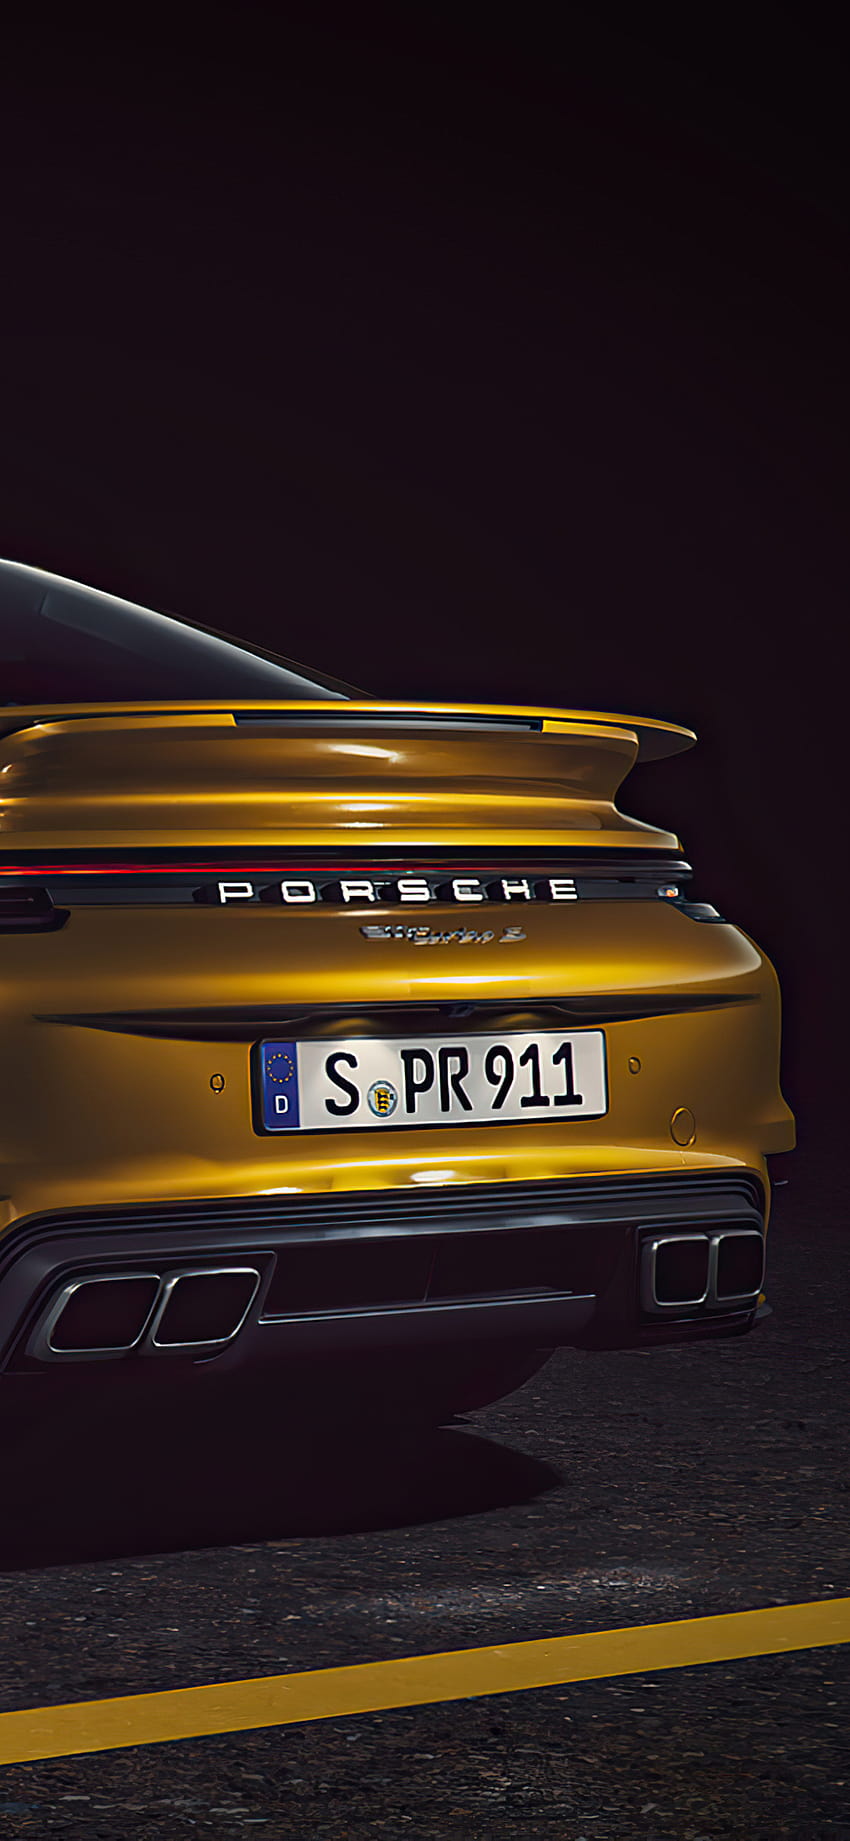 Porsche 911 Turbo S 2020 - Chiếc xe đầy tốc độ, đầy thể thao và đầy tính năng hiện đại. Với động cơ khủng và thiết kế tuyệt đẹp, Porsche 911 Turbo S 2020 là một trong những chiếc xe đắt giá nhất trên thị trường. Nhấn vào hình ảnh để khám phá những đường cong quyến rũ của chiếc xe thể thao tiêu chuẩn quốc tế này.